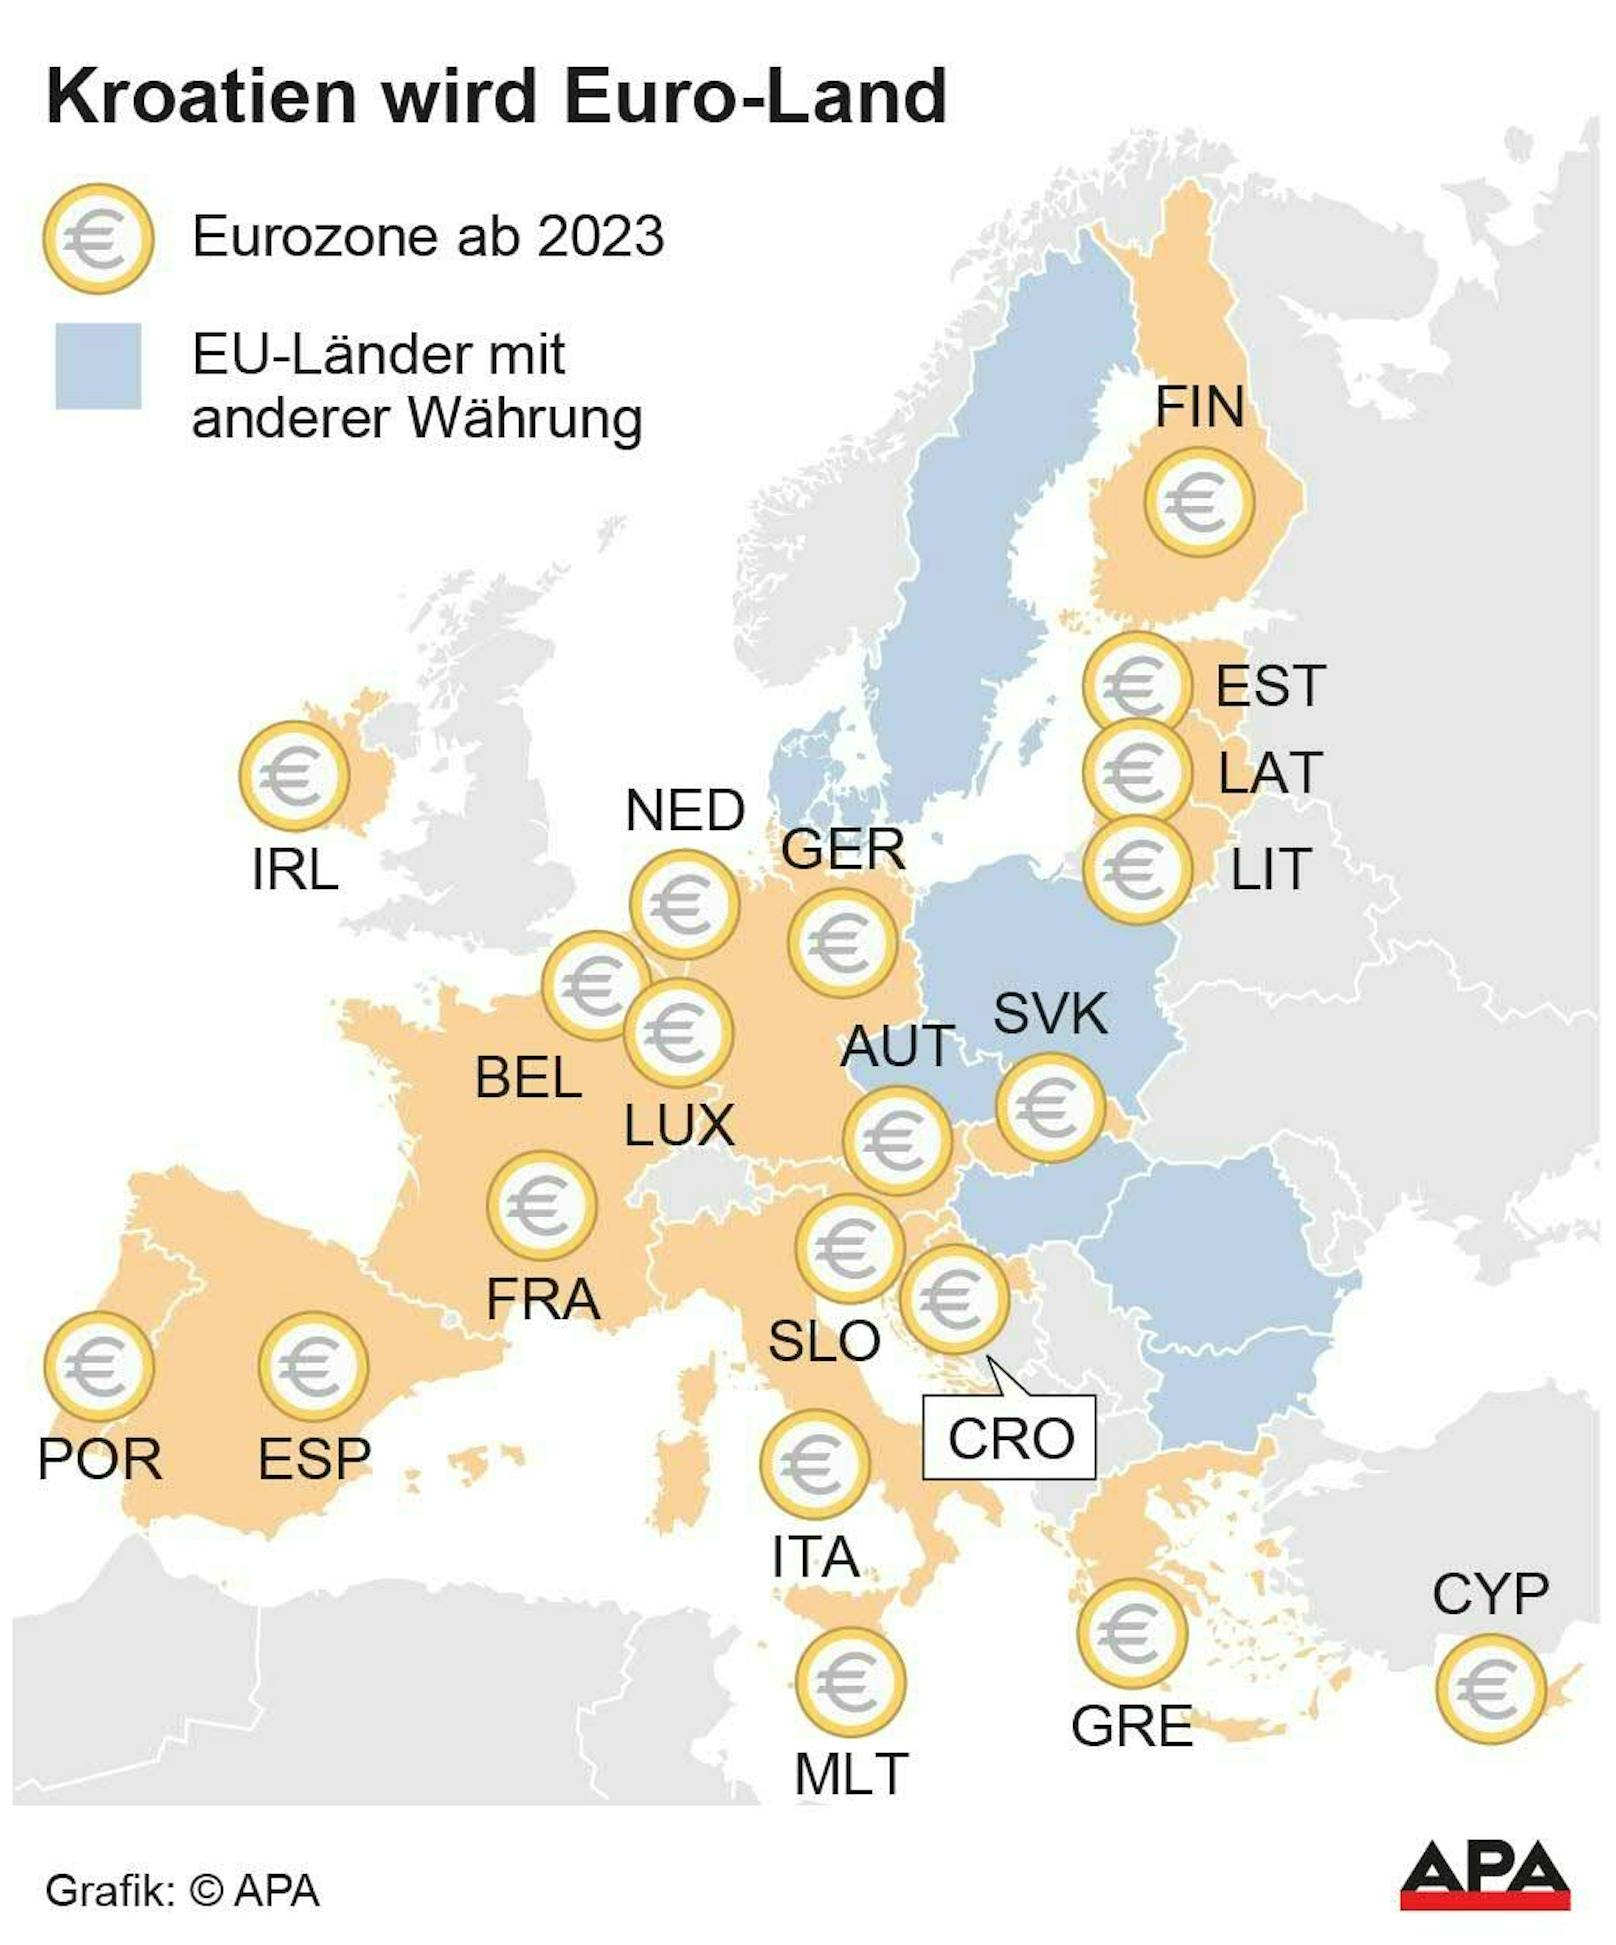 Kroatien wird 2023 zum Euro-Land.